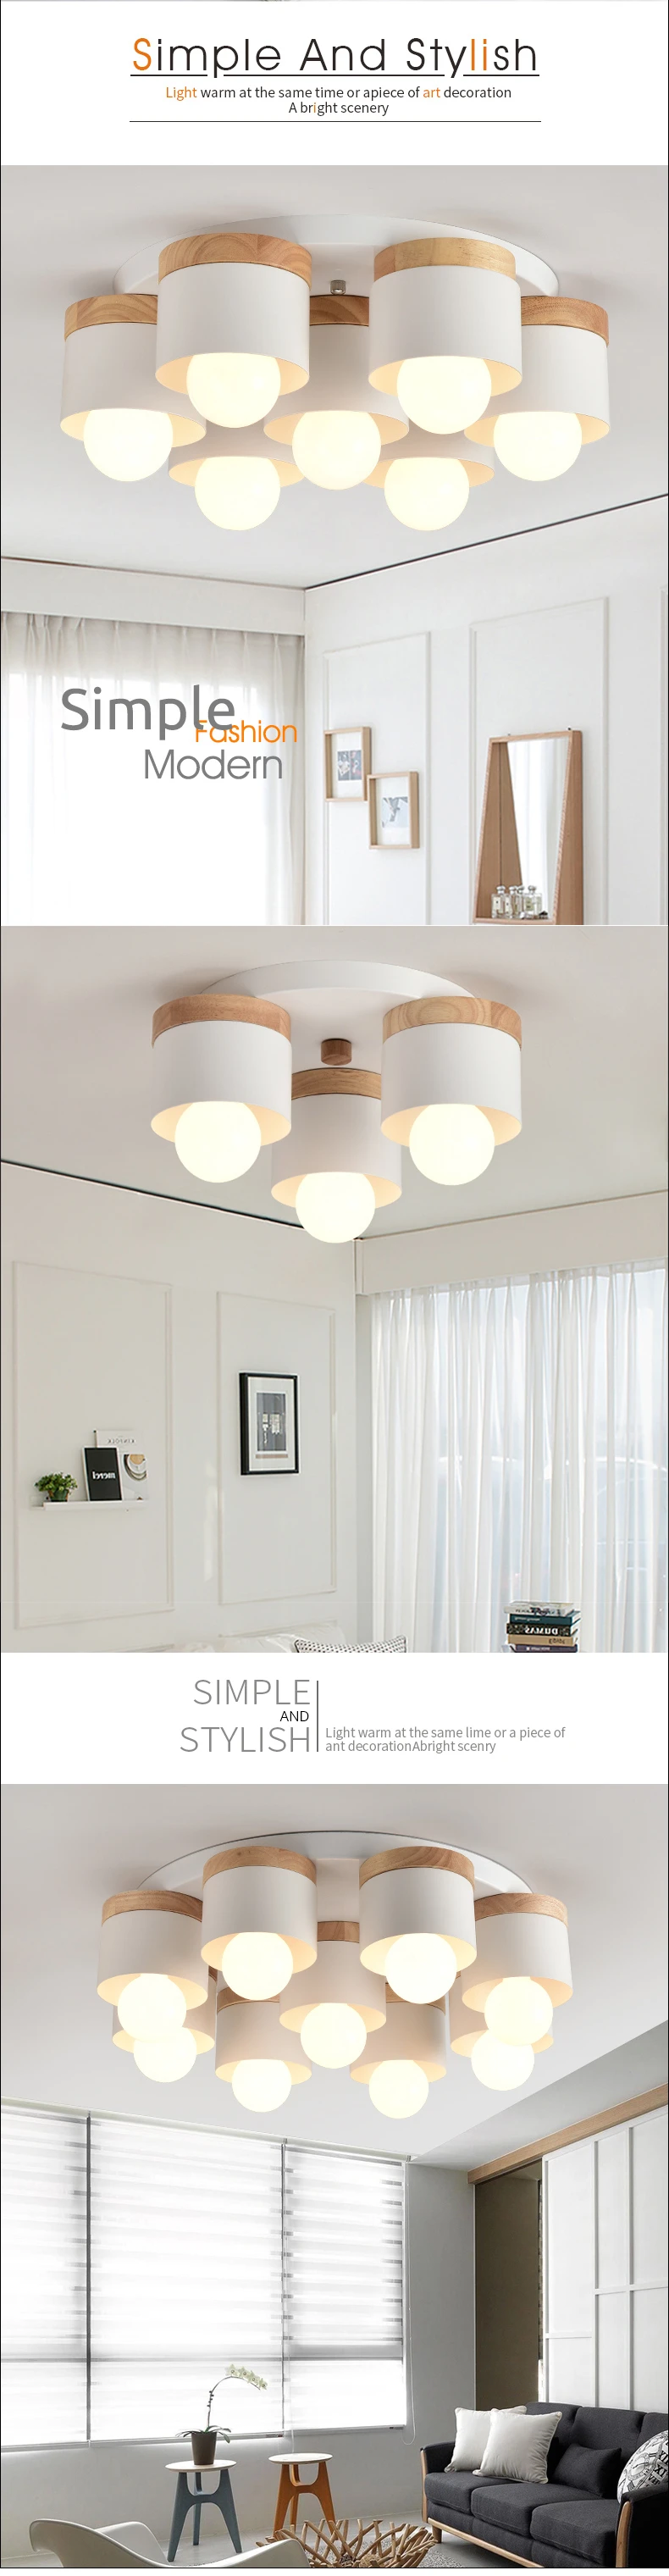 TRAZOS, простой дизайн, светодиодный потолочный светильник для столовой, деревянный, кухонный лампадарио, винтажный, металлический, подвесной светильник для ресторана, светильник